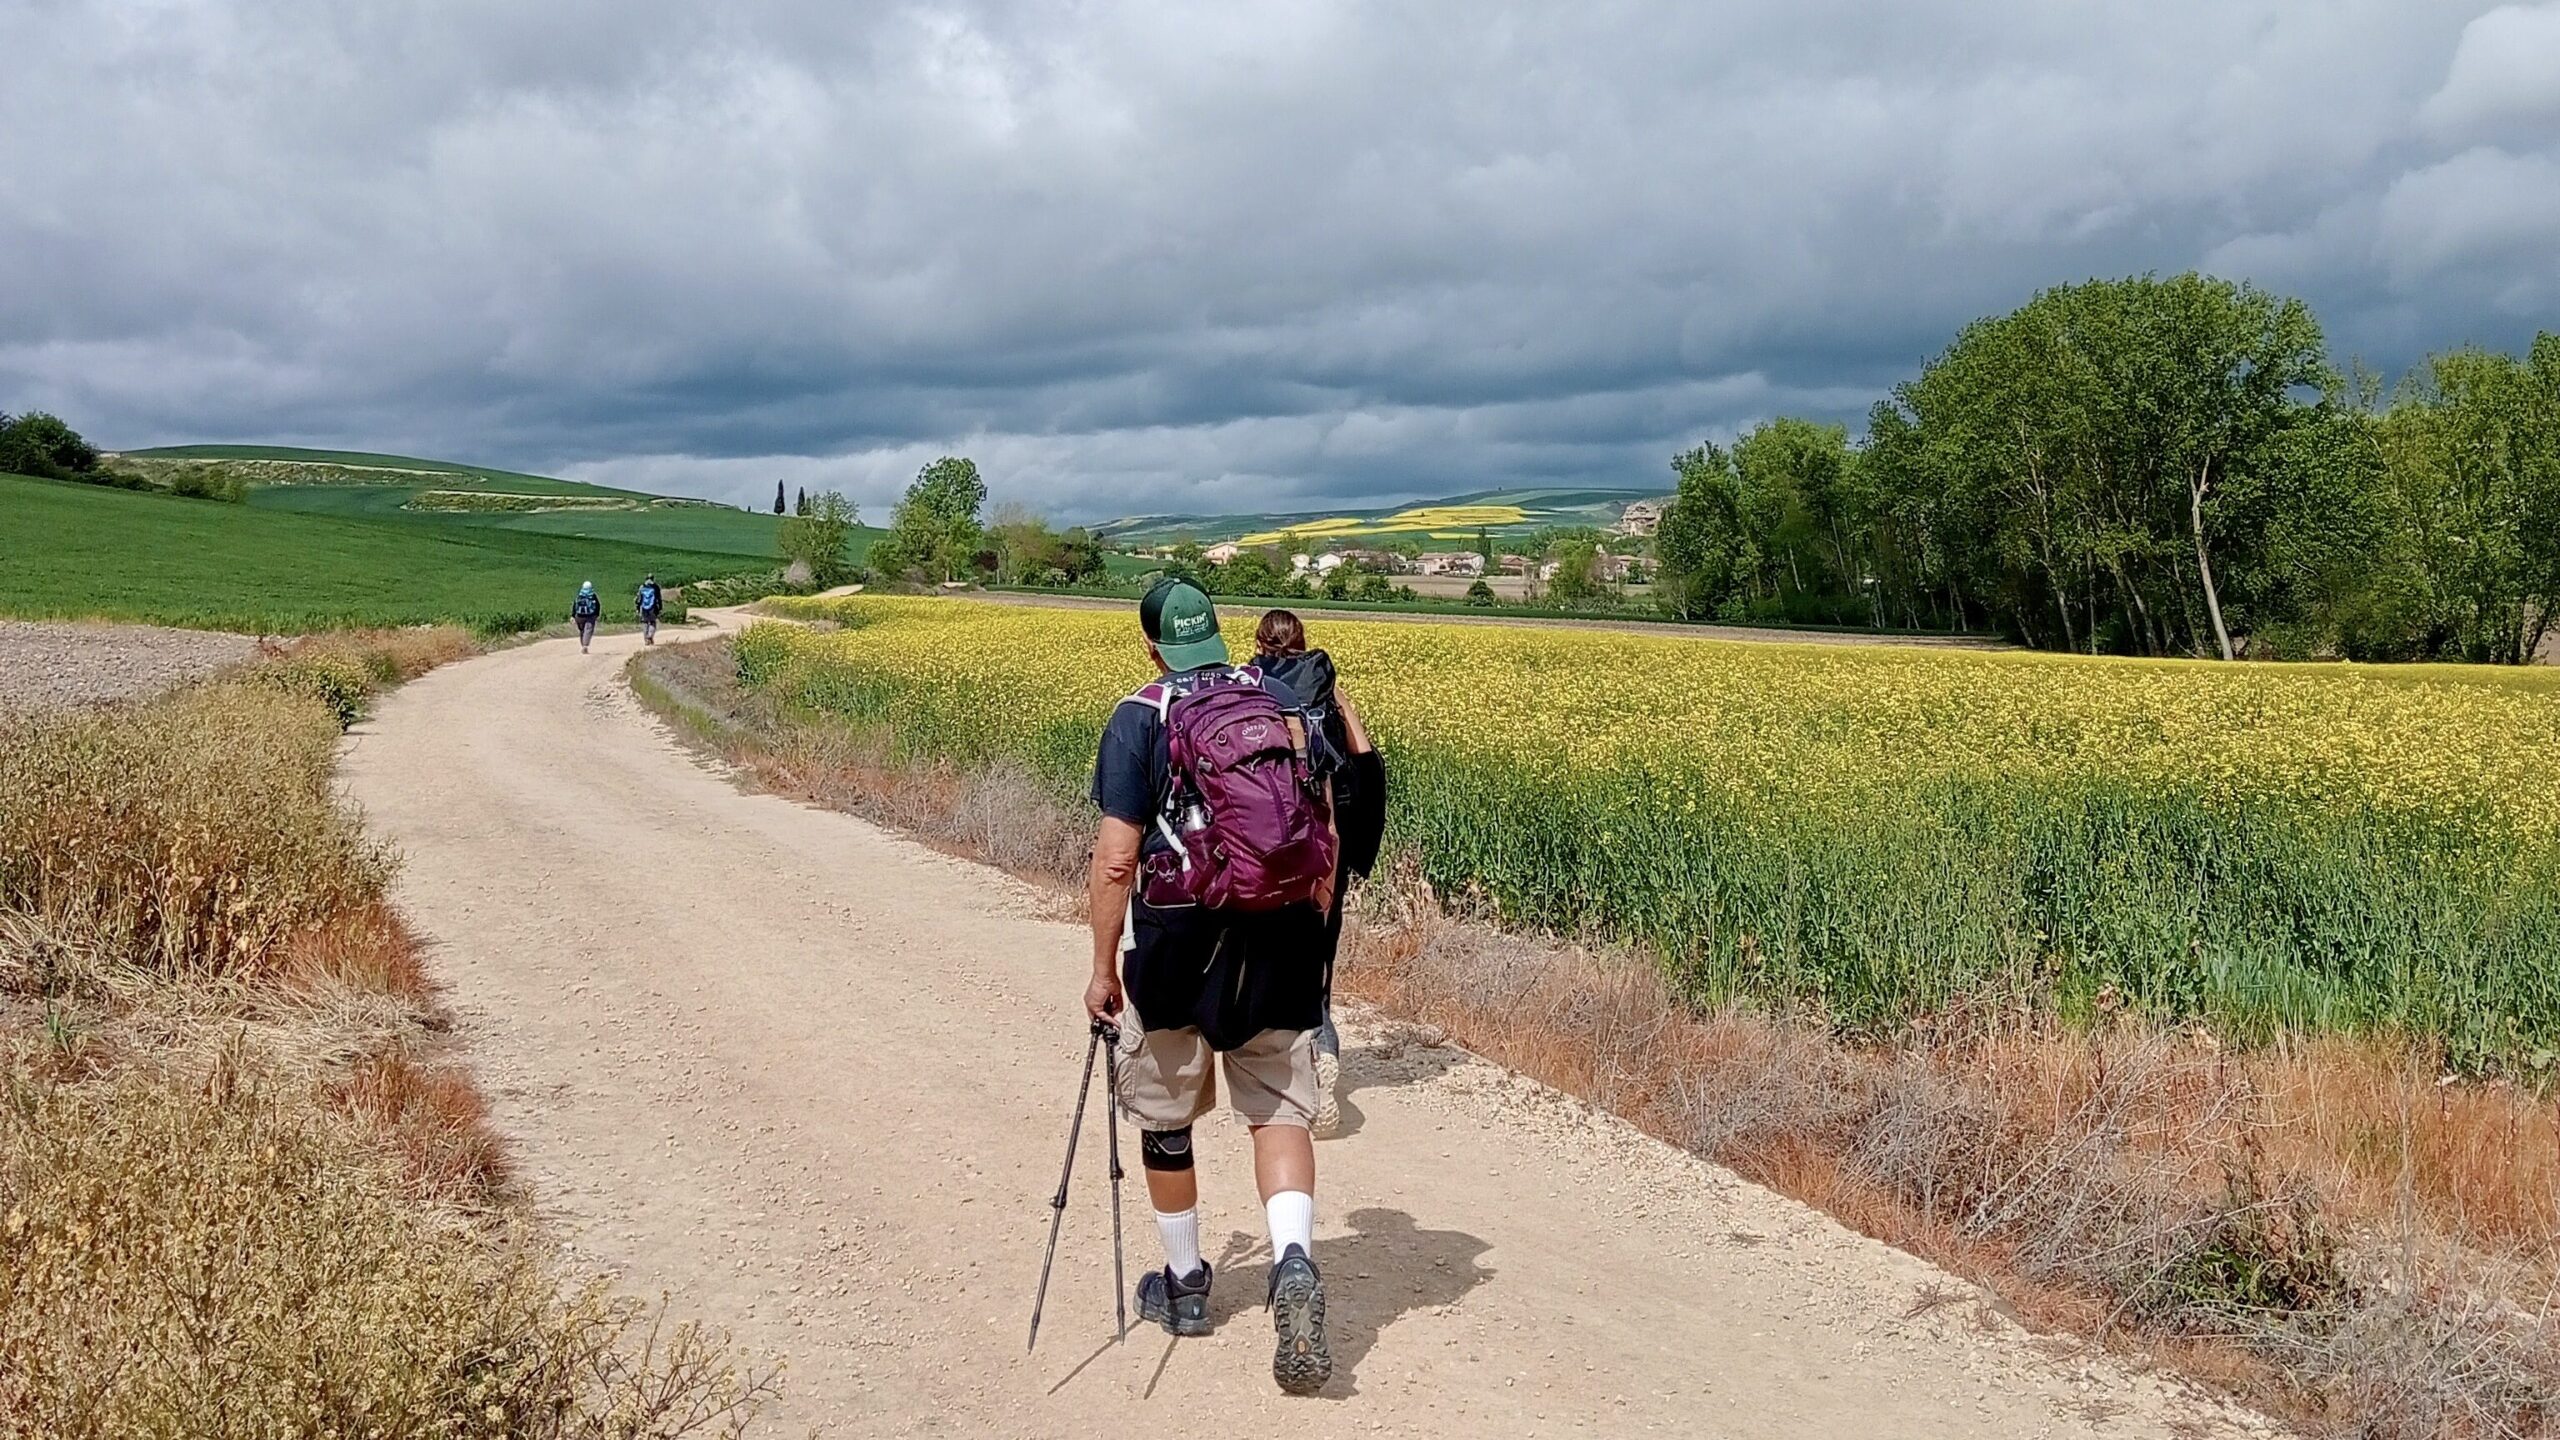 The Camino in La Rioja